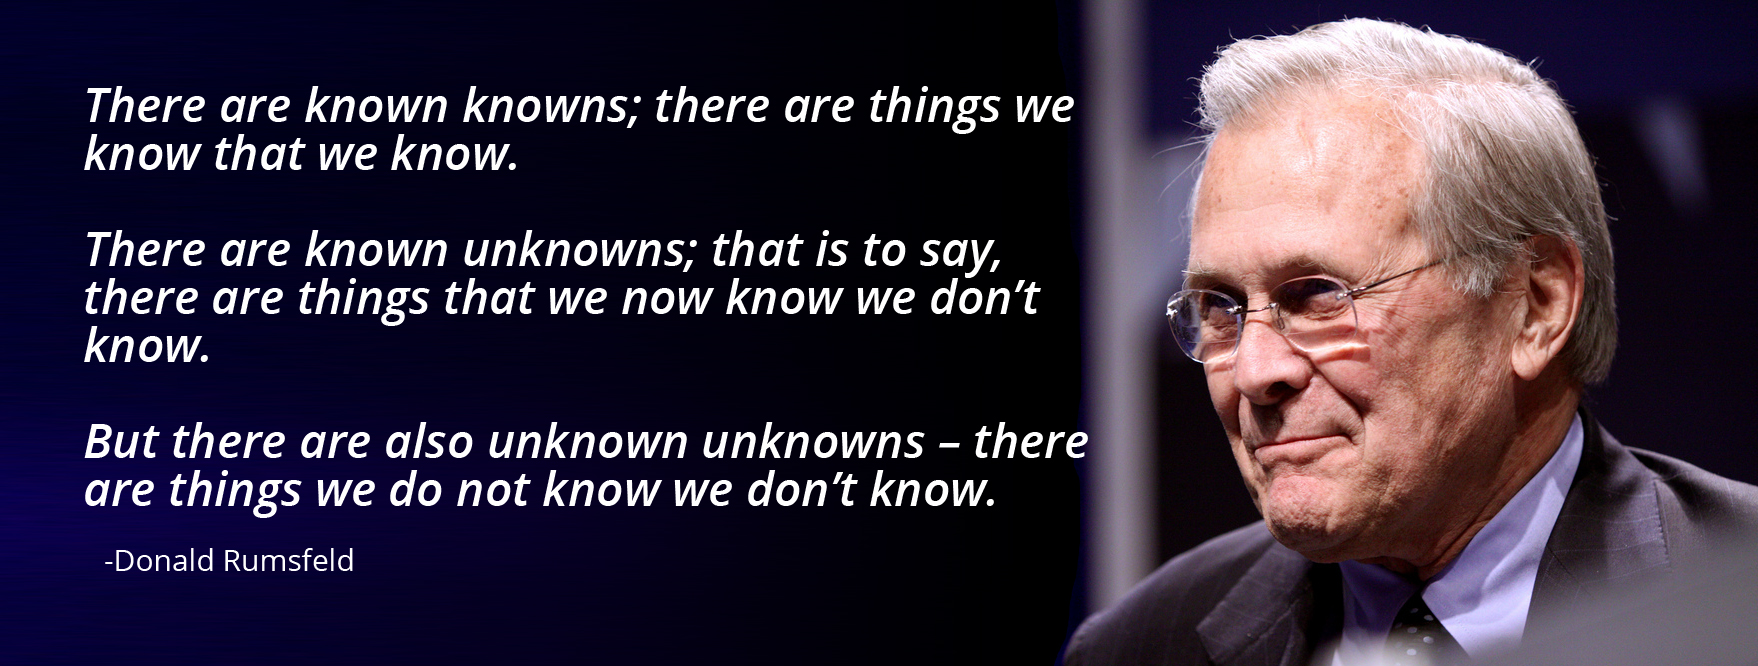 Known knowns, known unknowns, and unknown unknowns